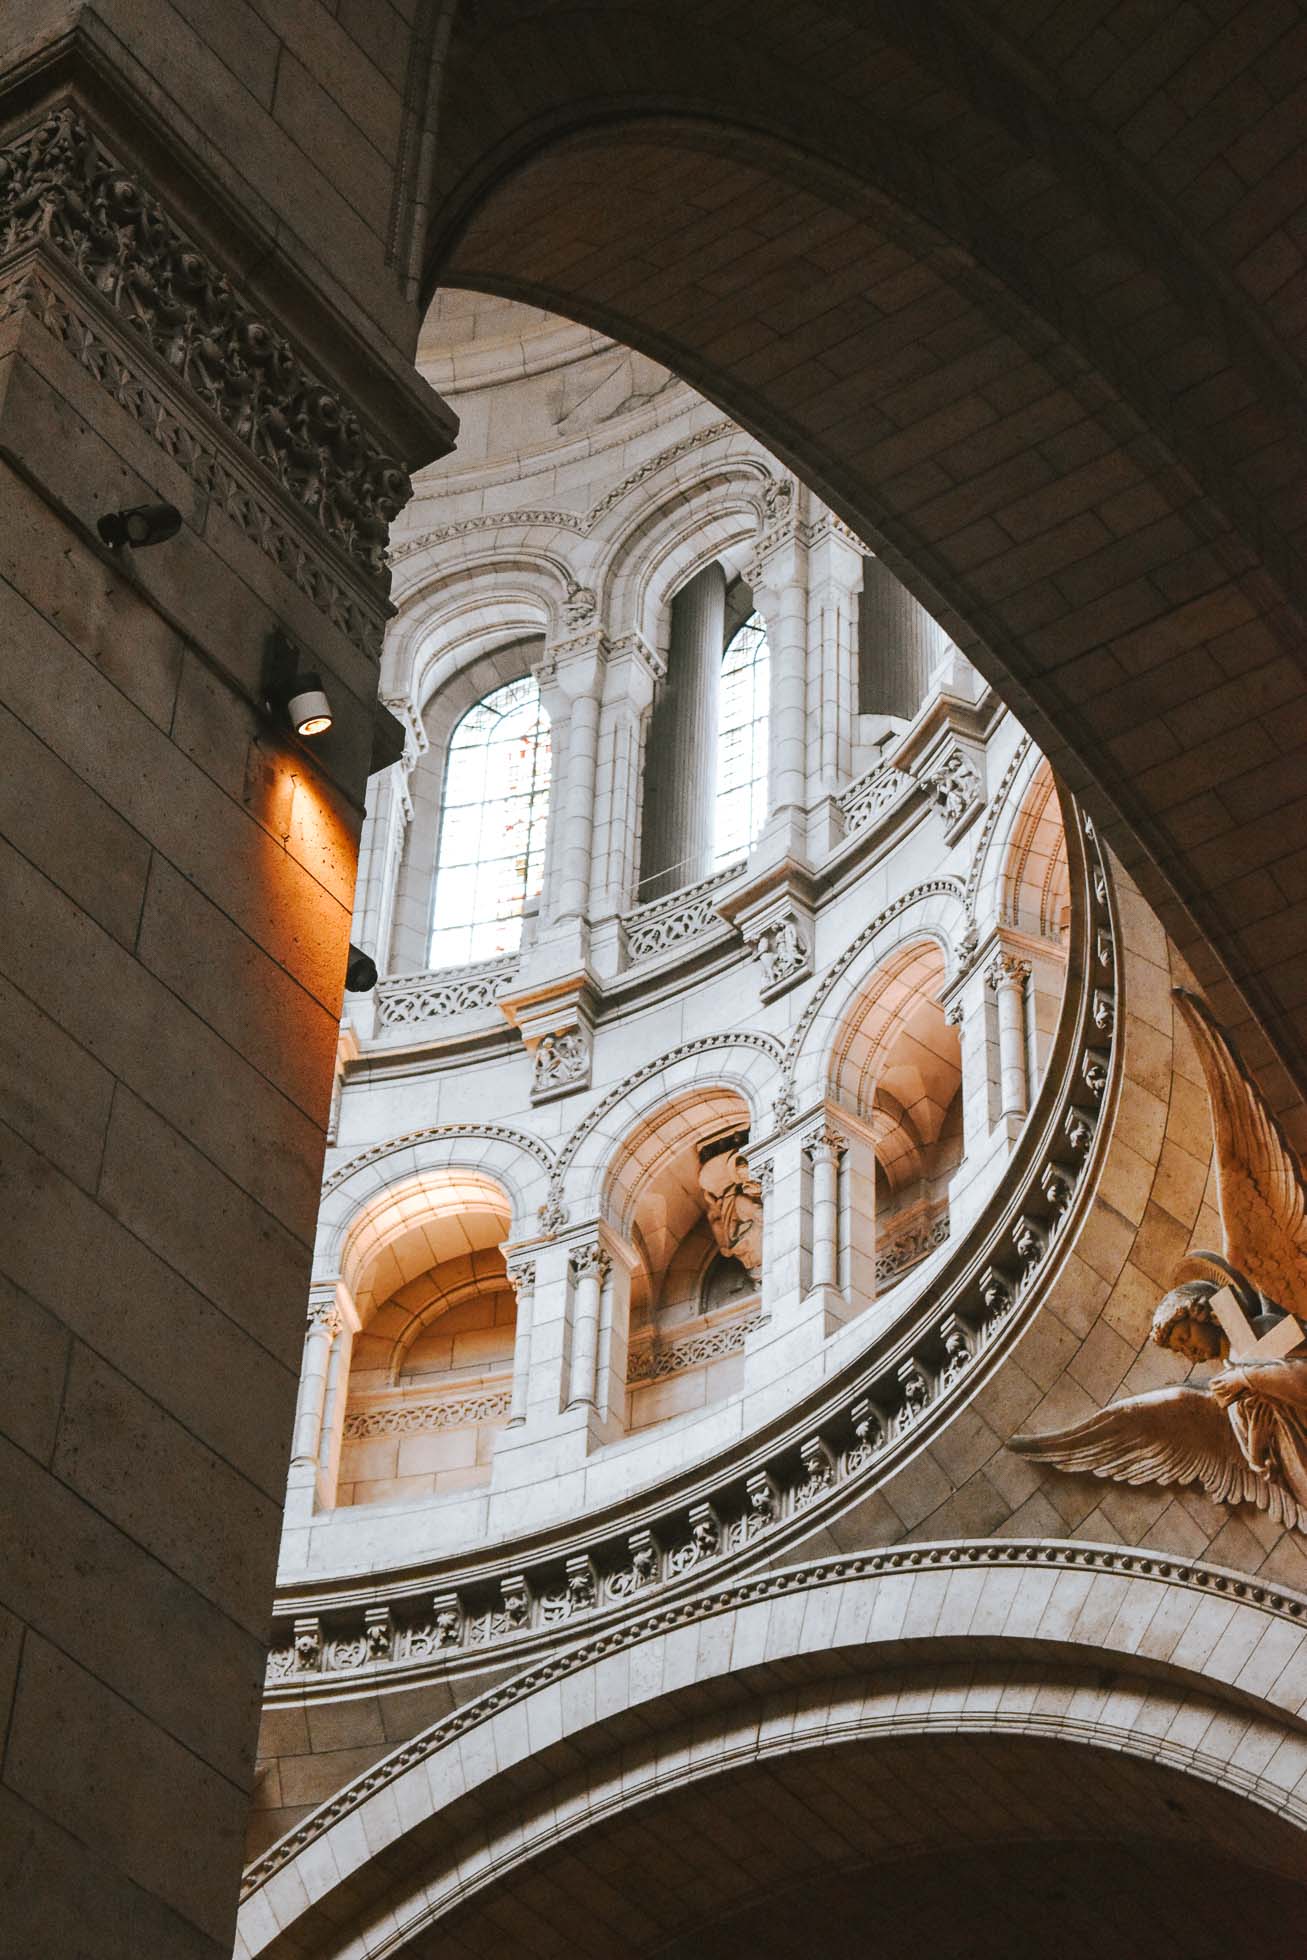 Impresionante Basílica del Sagrado Corazón, uno de los puntos más destacados que ver en París en dos días